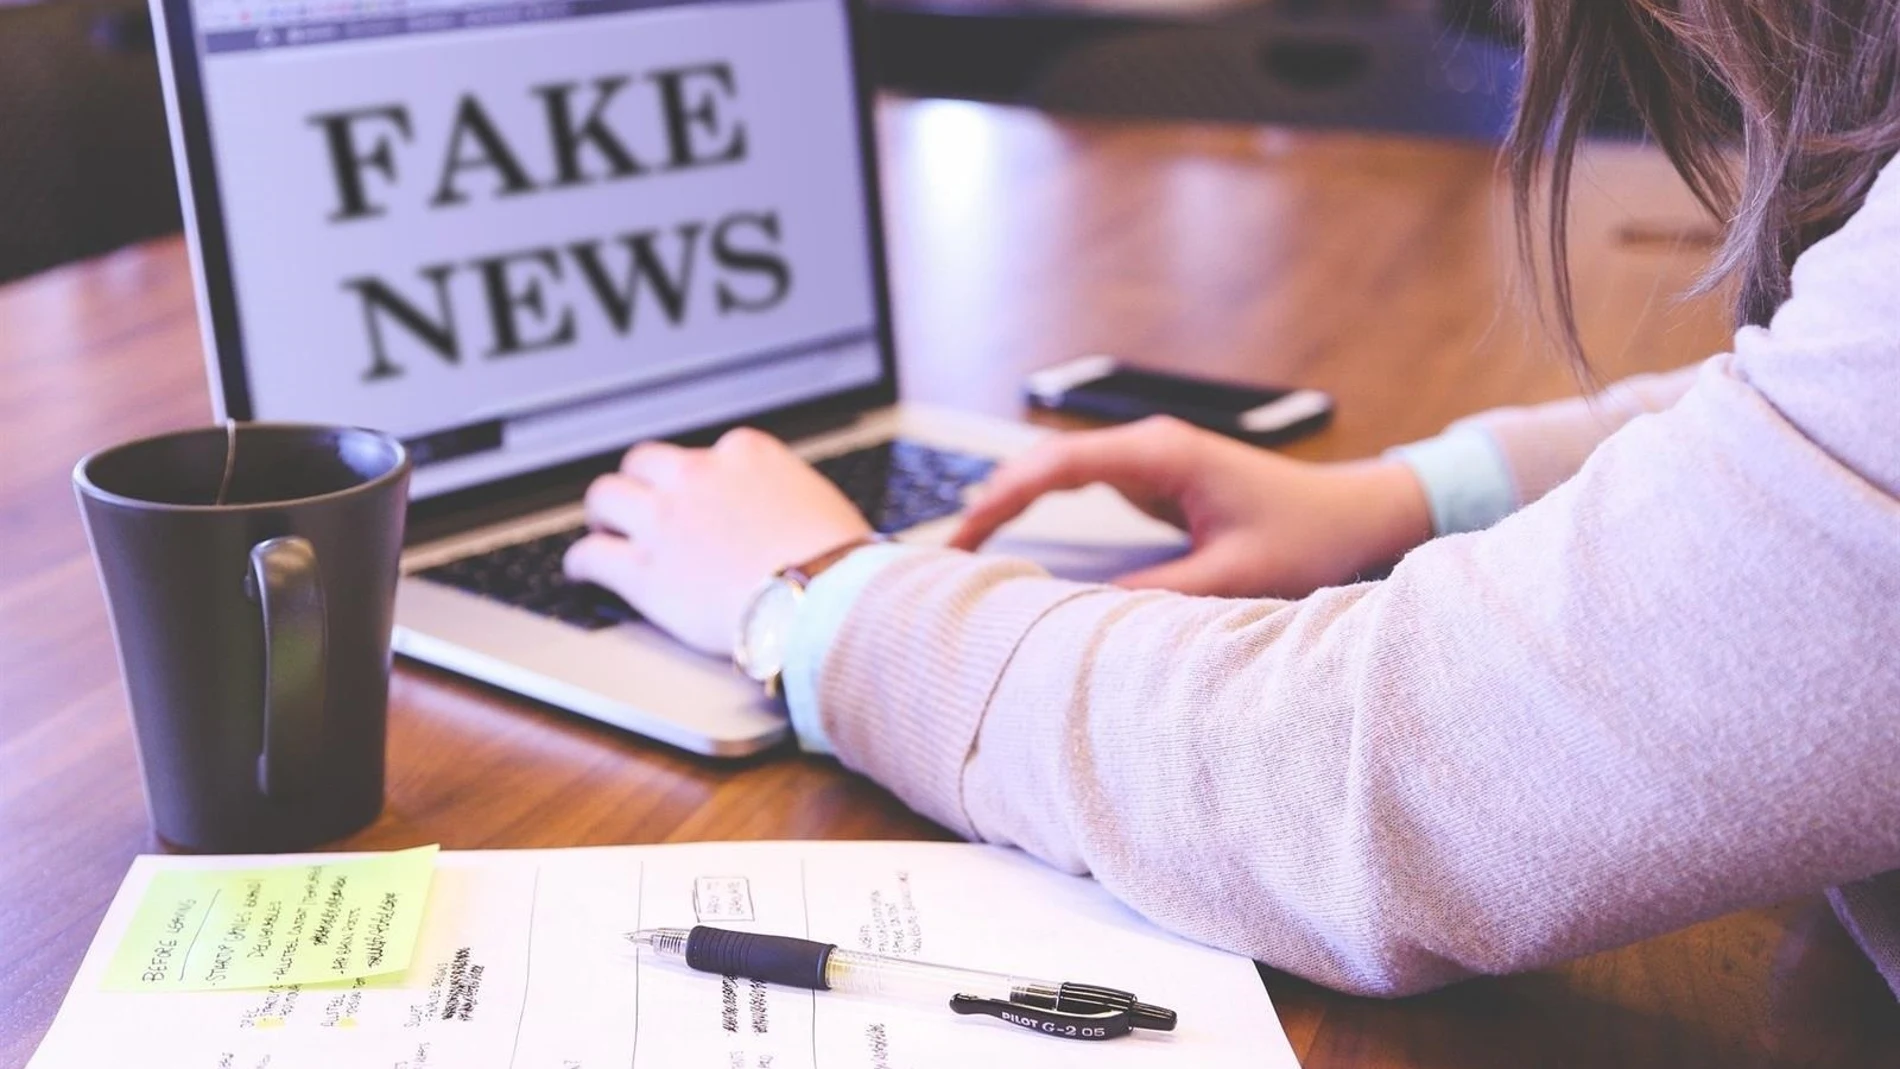 Las "fake News" se combaten con información